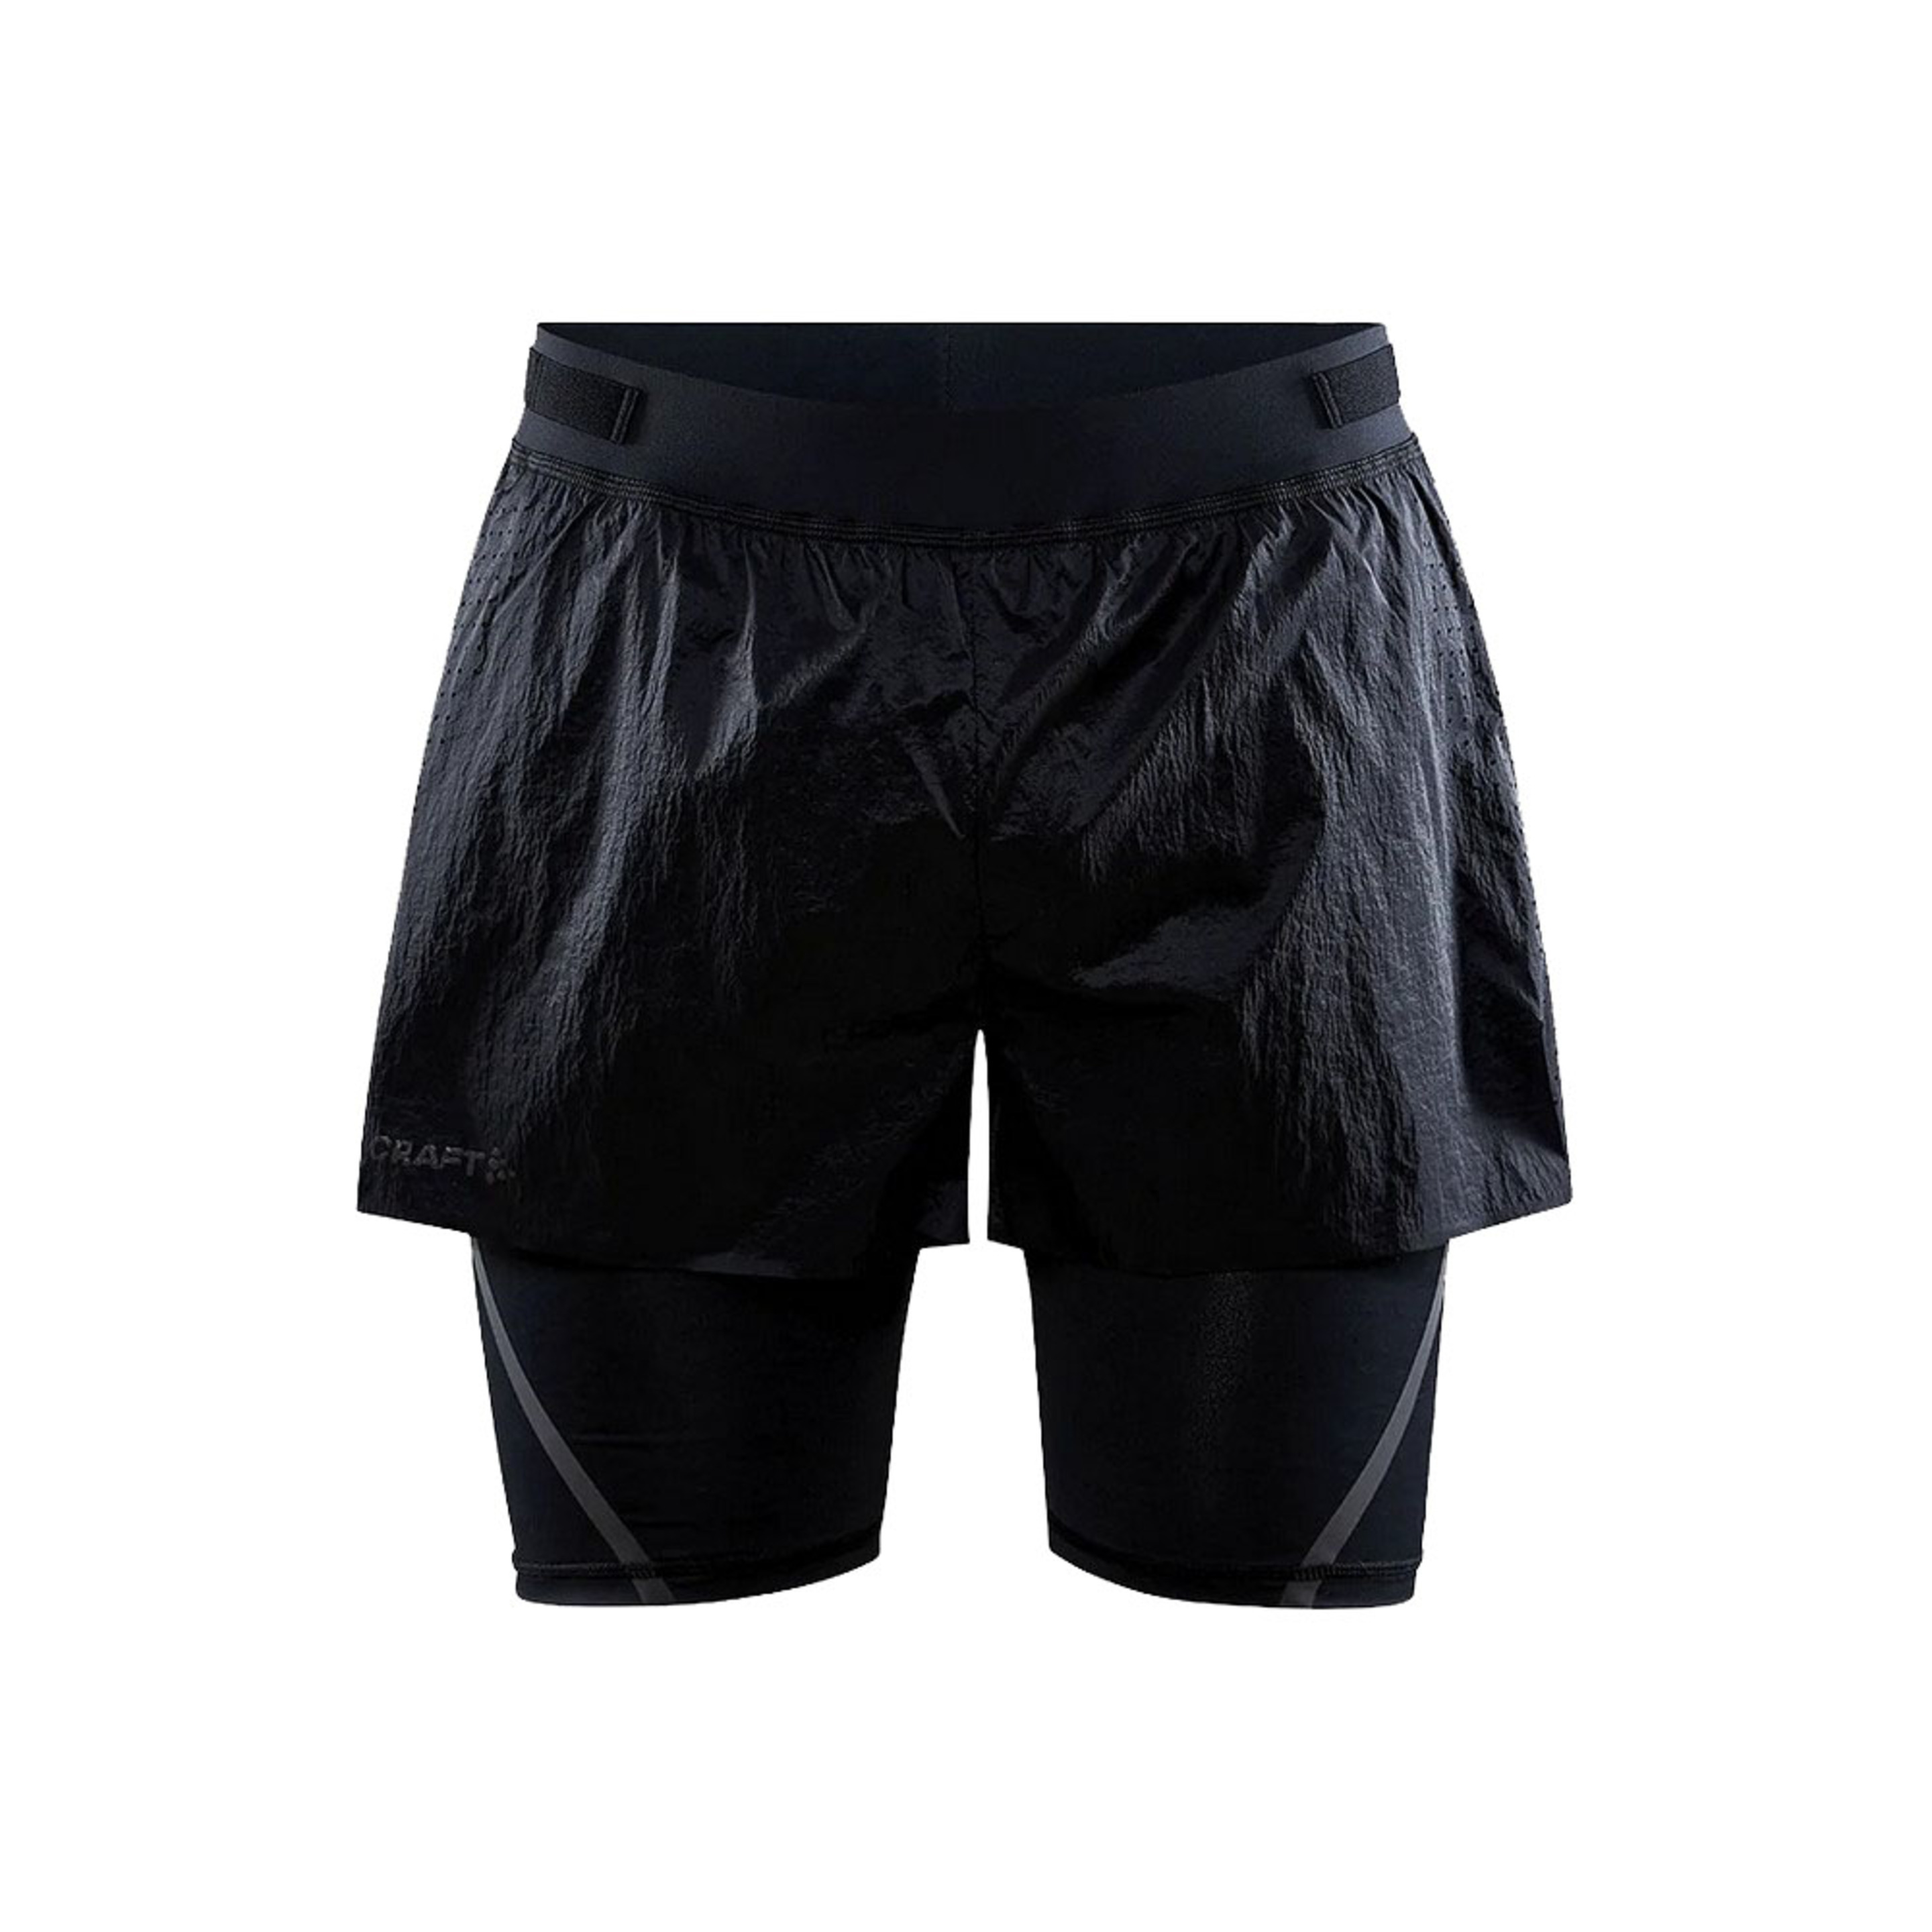 Pantalones Cortos Diseño 2 En 1 Craft Ctm Distance - negro - 